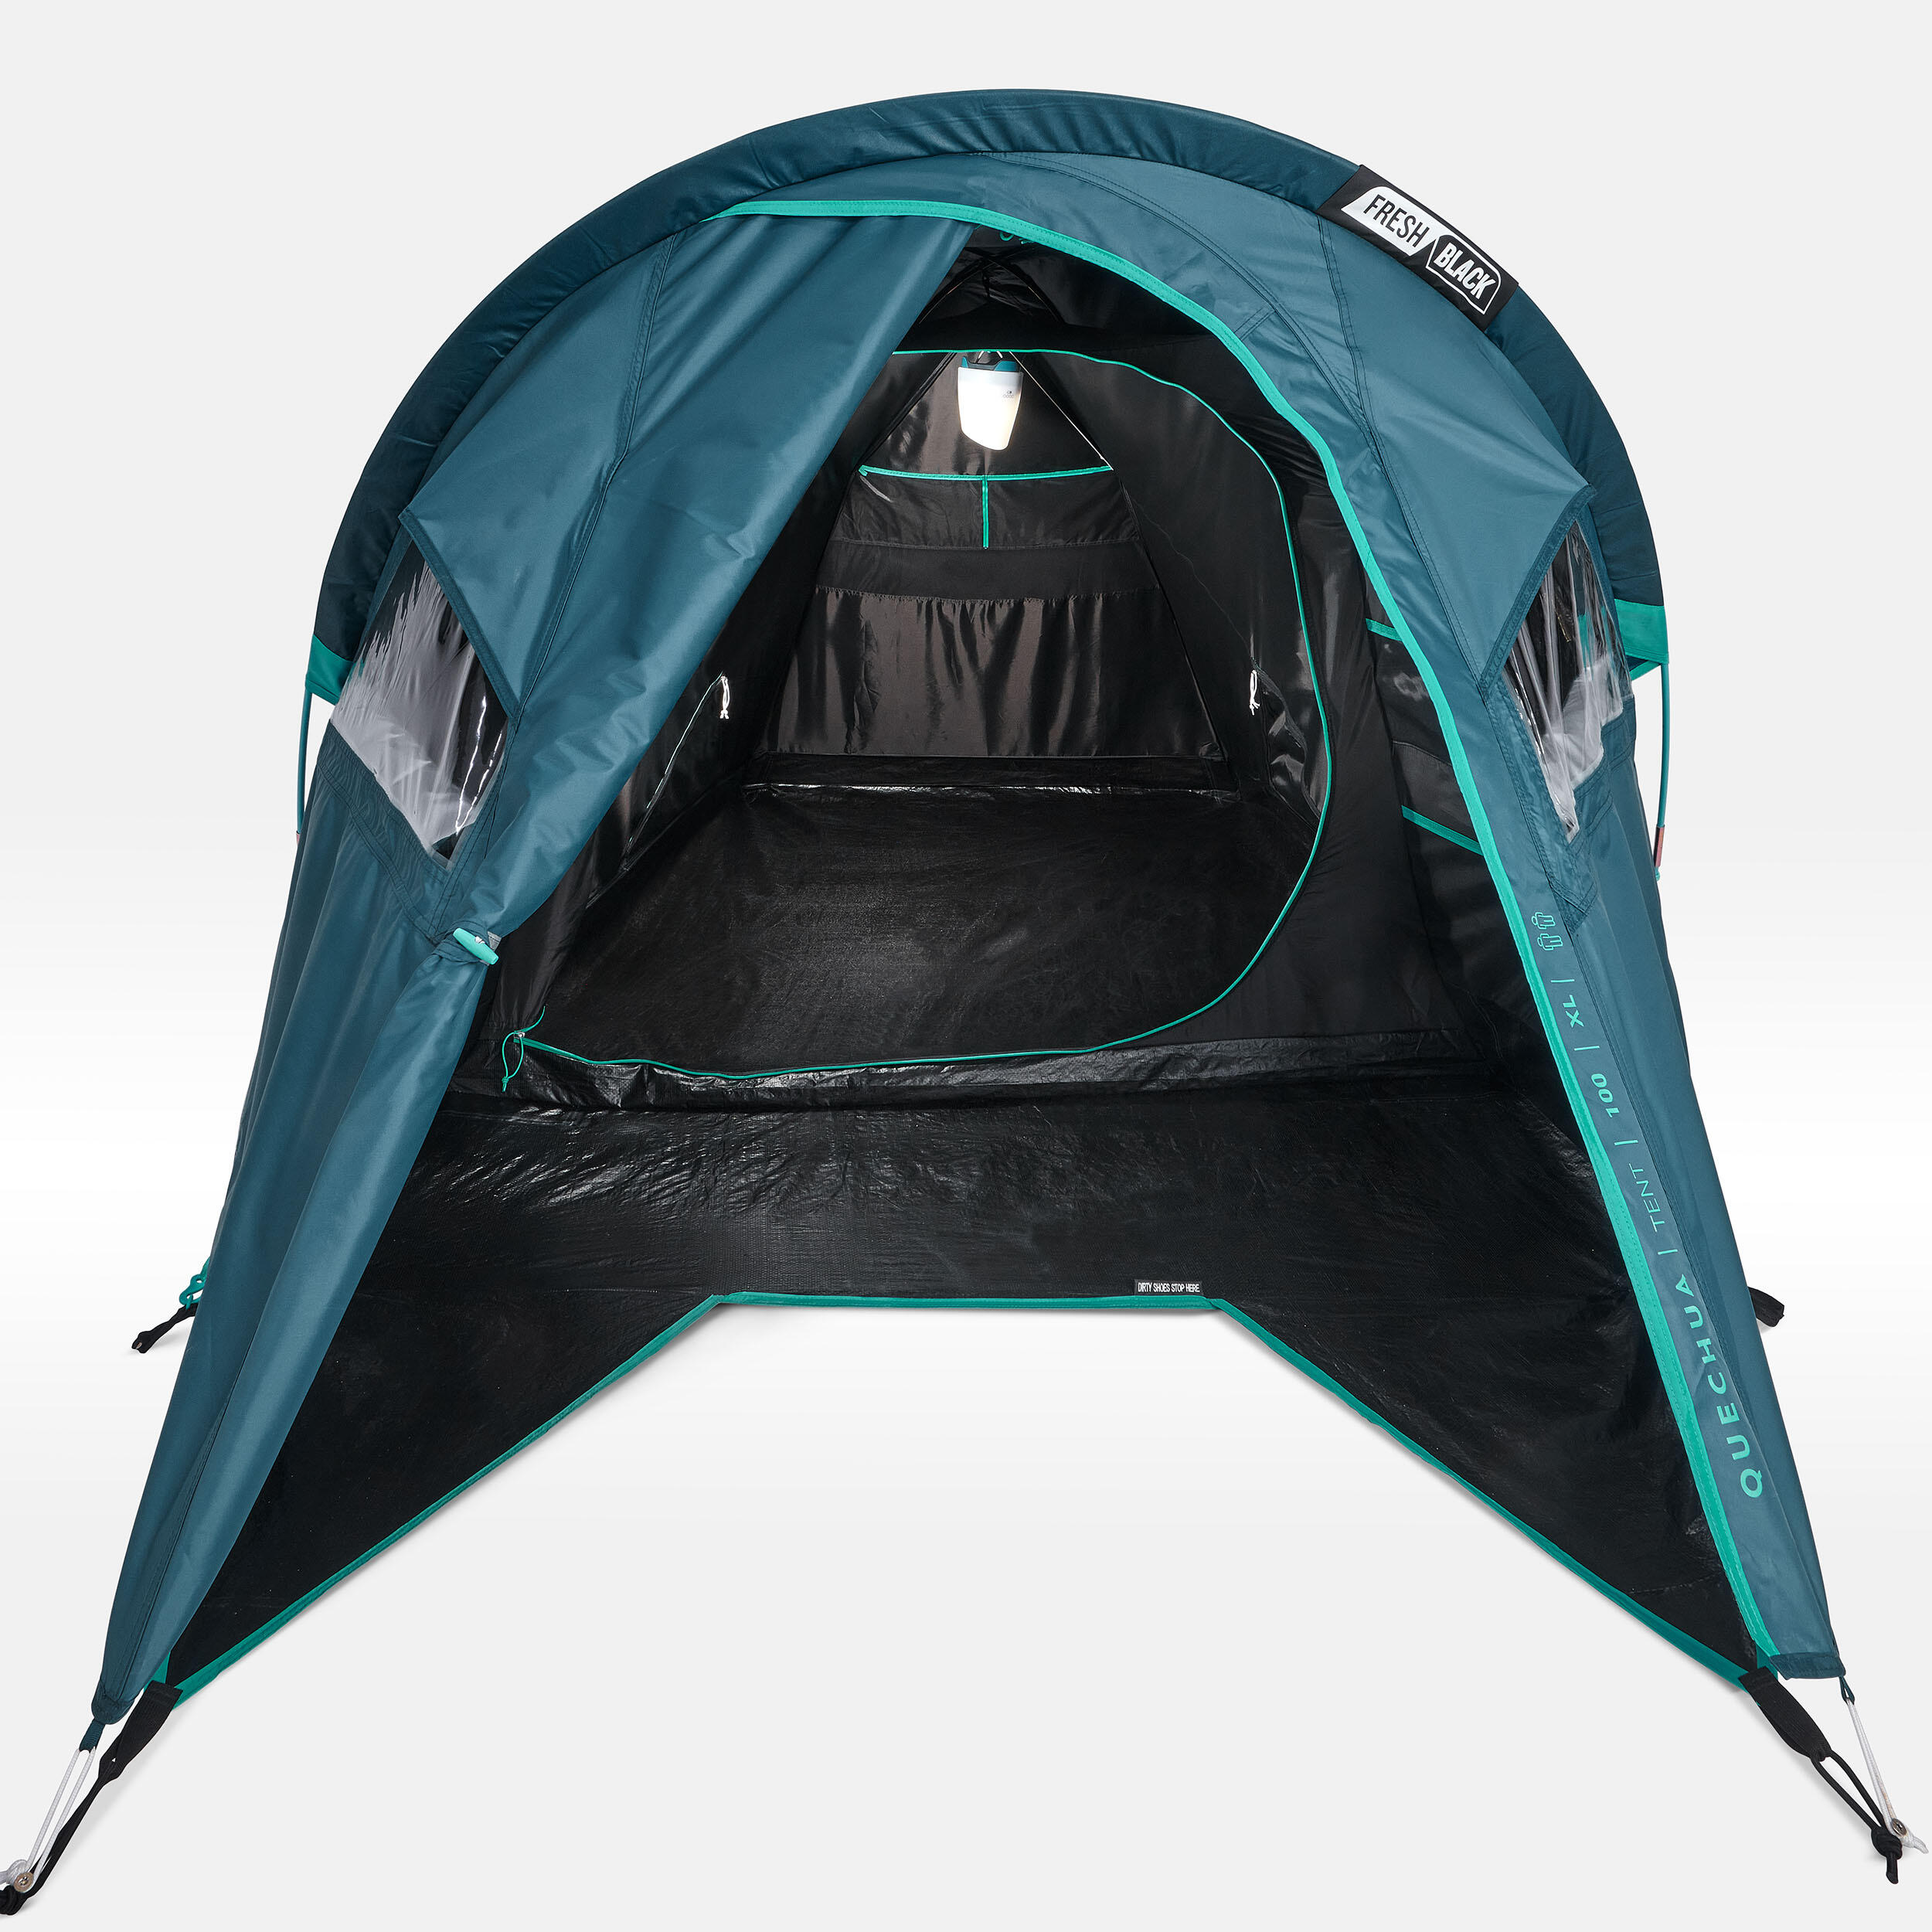 Camping tent MH100 XL - 2-P - Fresh&Black 6/19